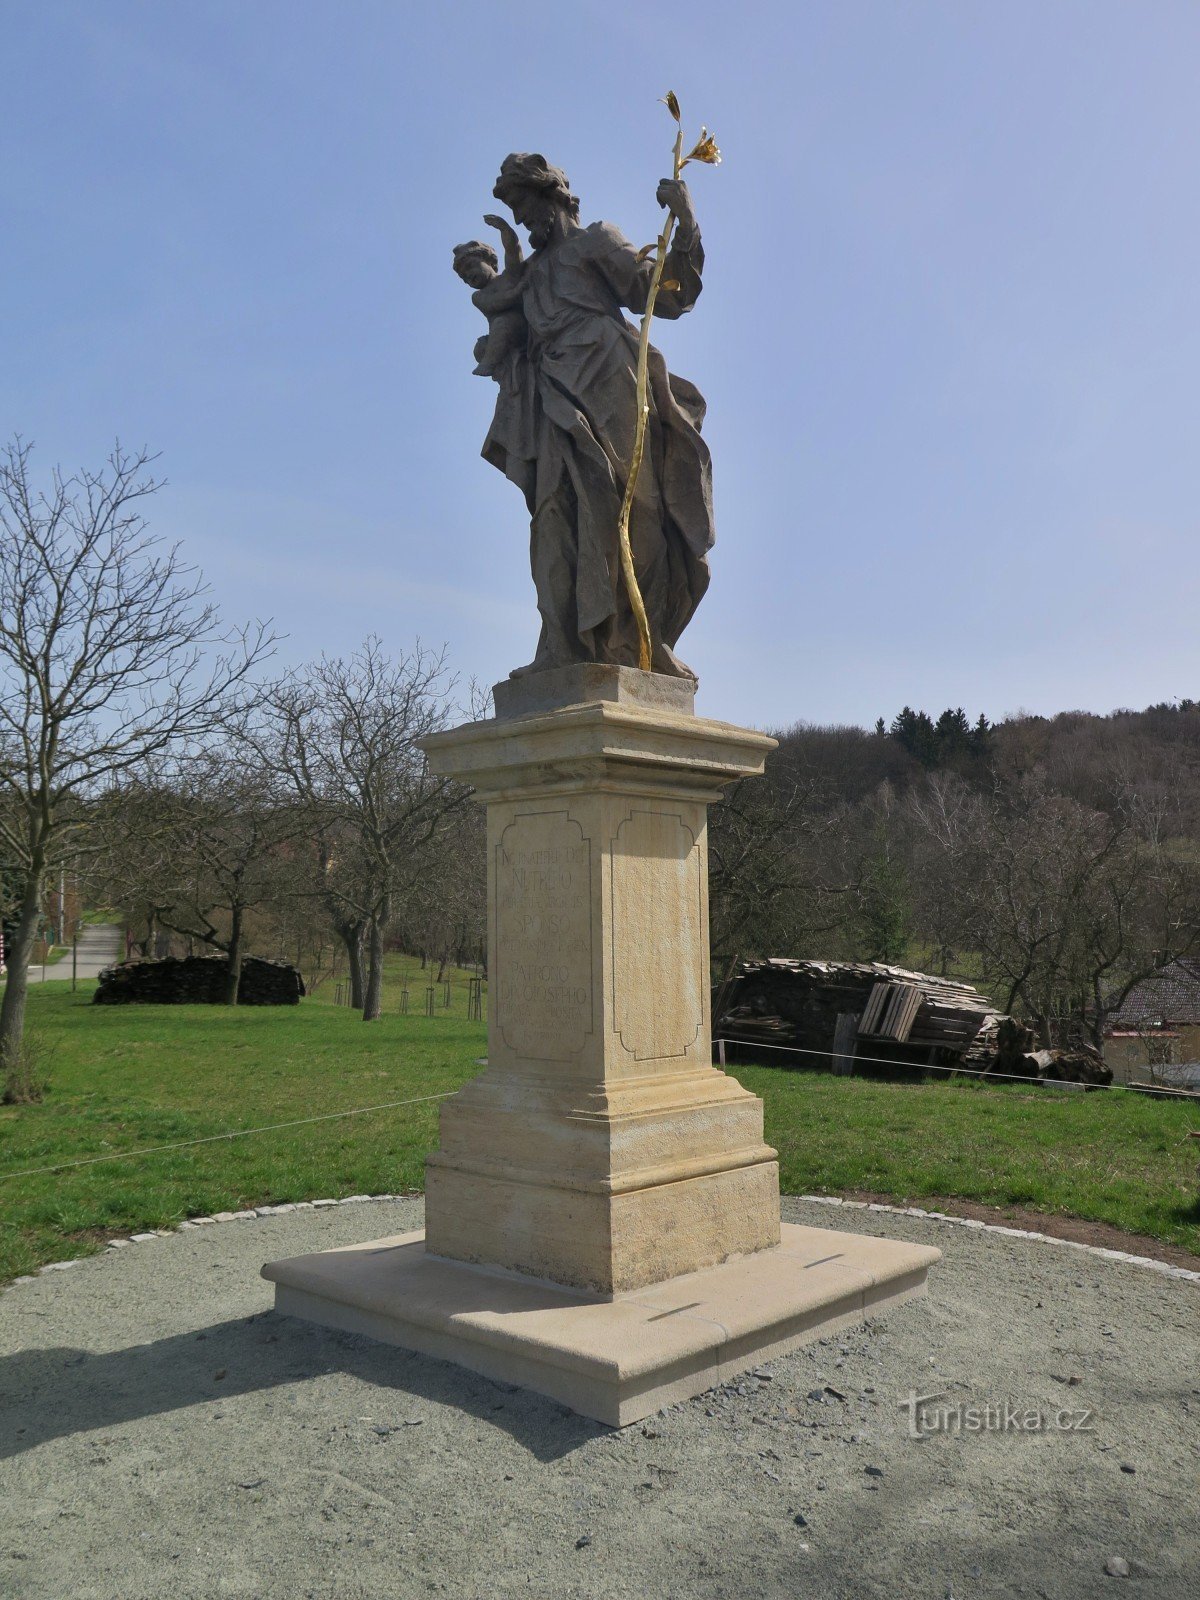 Knínice (perto de Boskovice) - estátua de St. Joseph